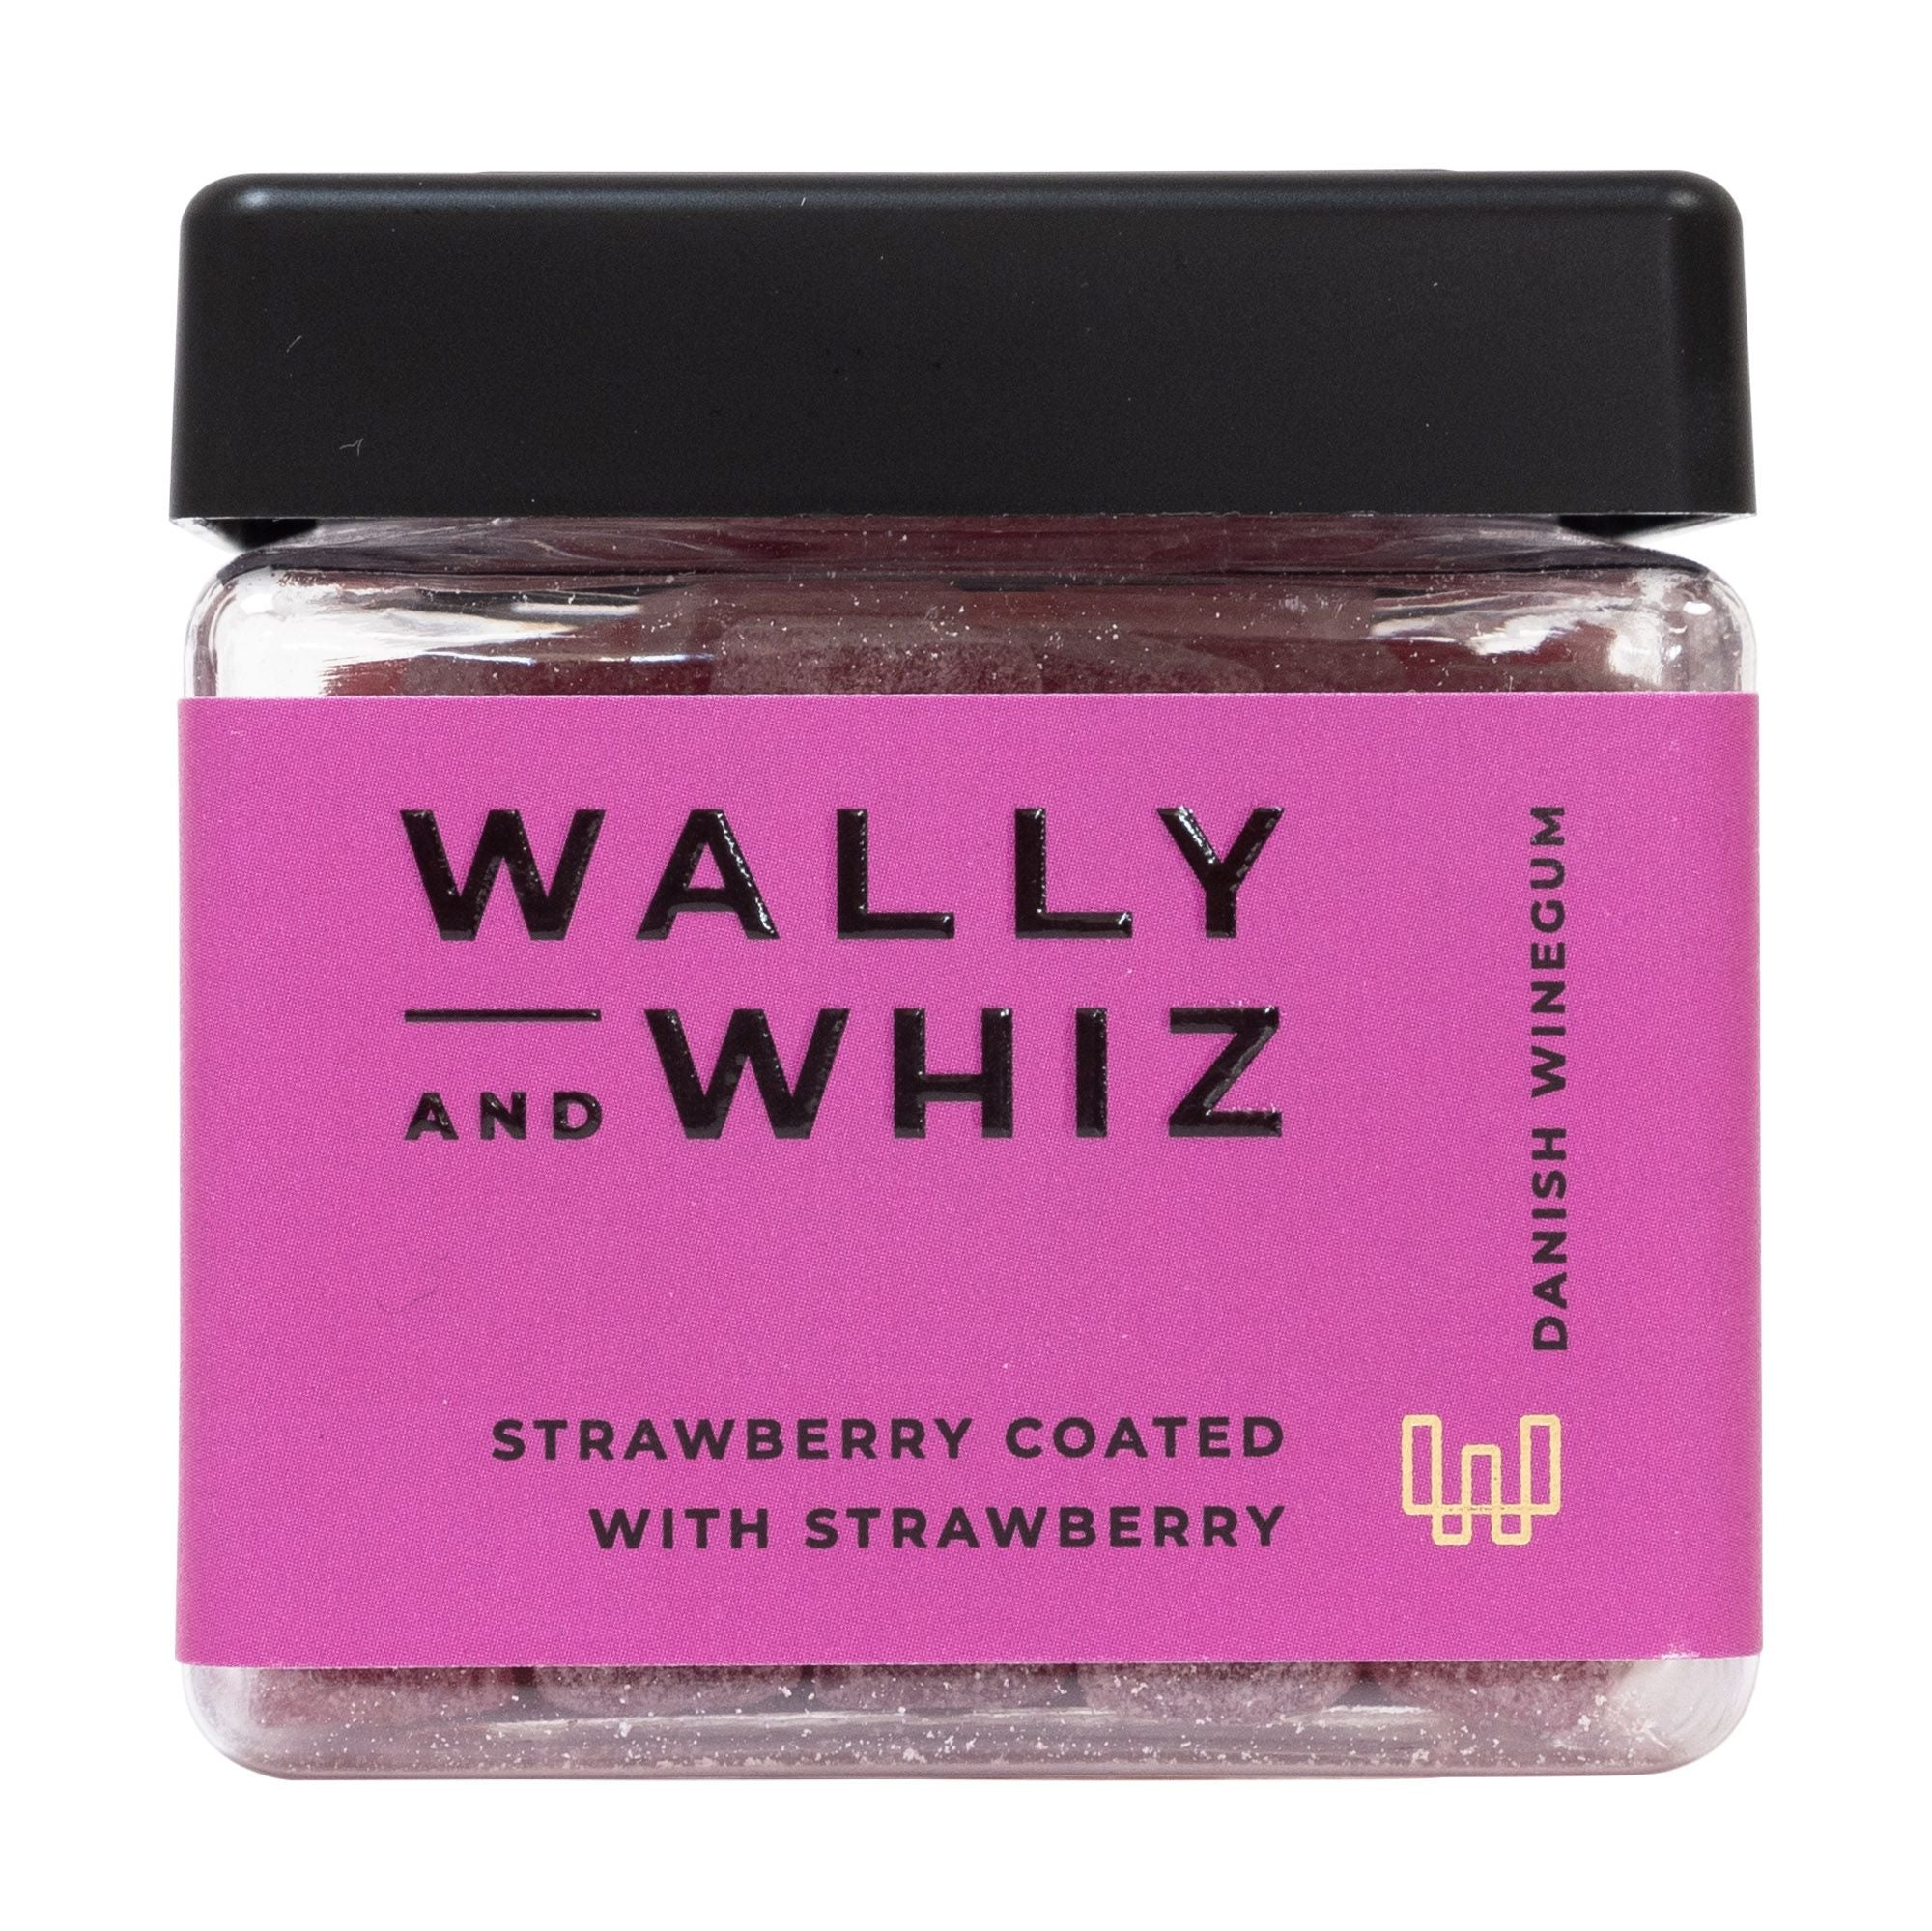 Wally And Whiz Zomerwijngomkubus, aardbei met aardbei, 140 g